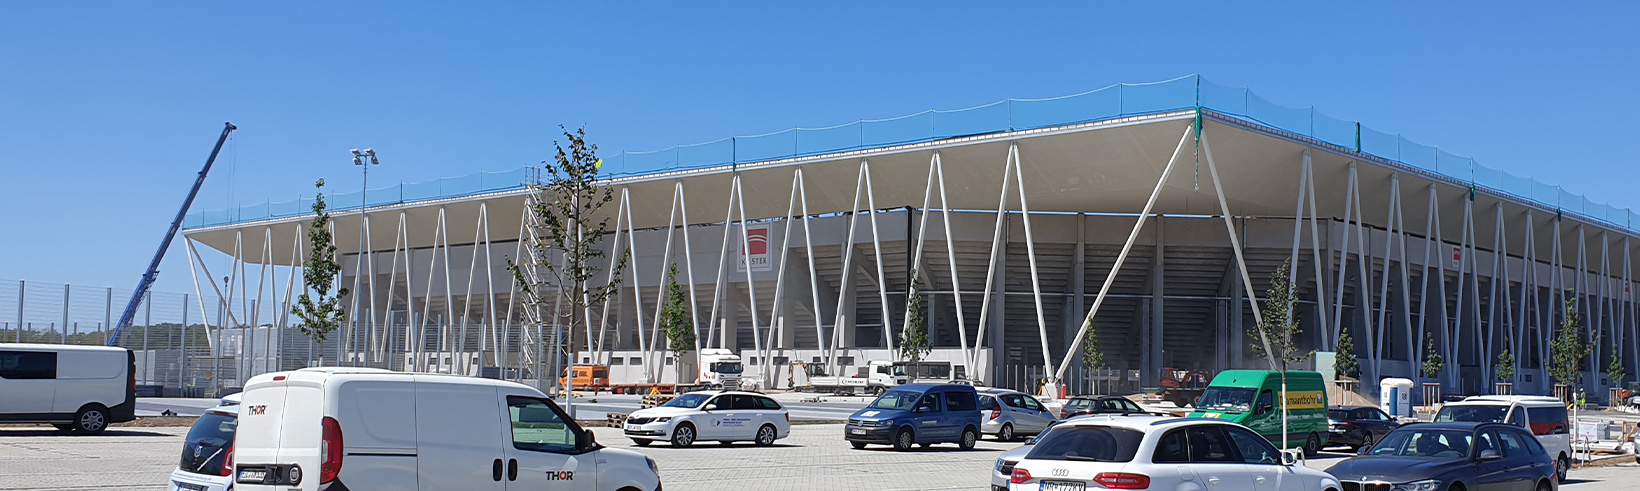 Bilderstory zum neuen Stadion des SC Freiburg (Europa-Park Stadion) -Teil 2